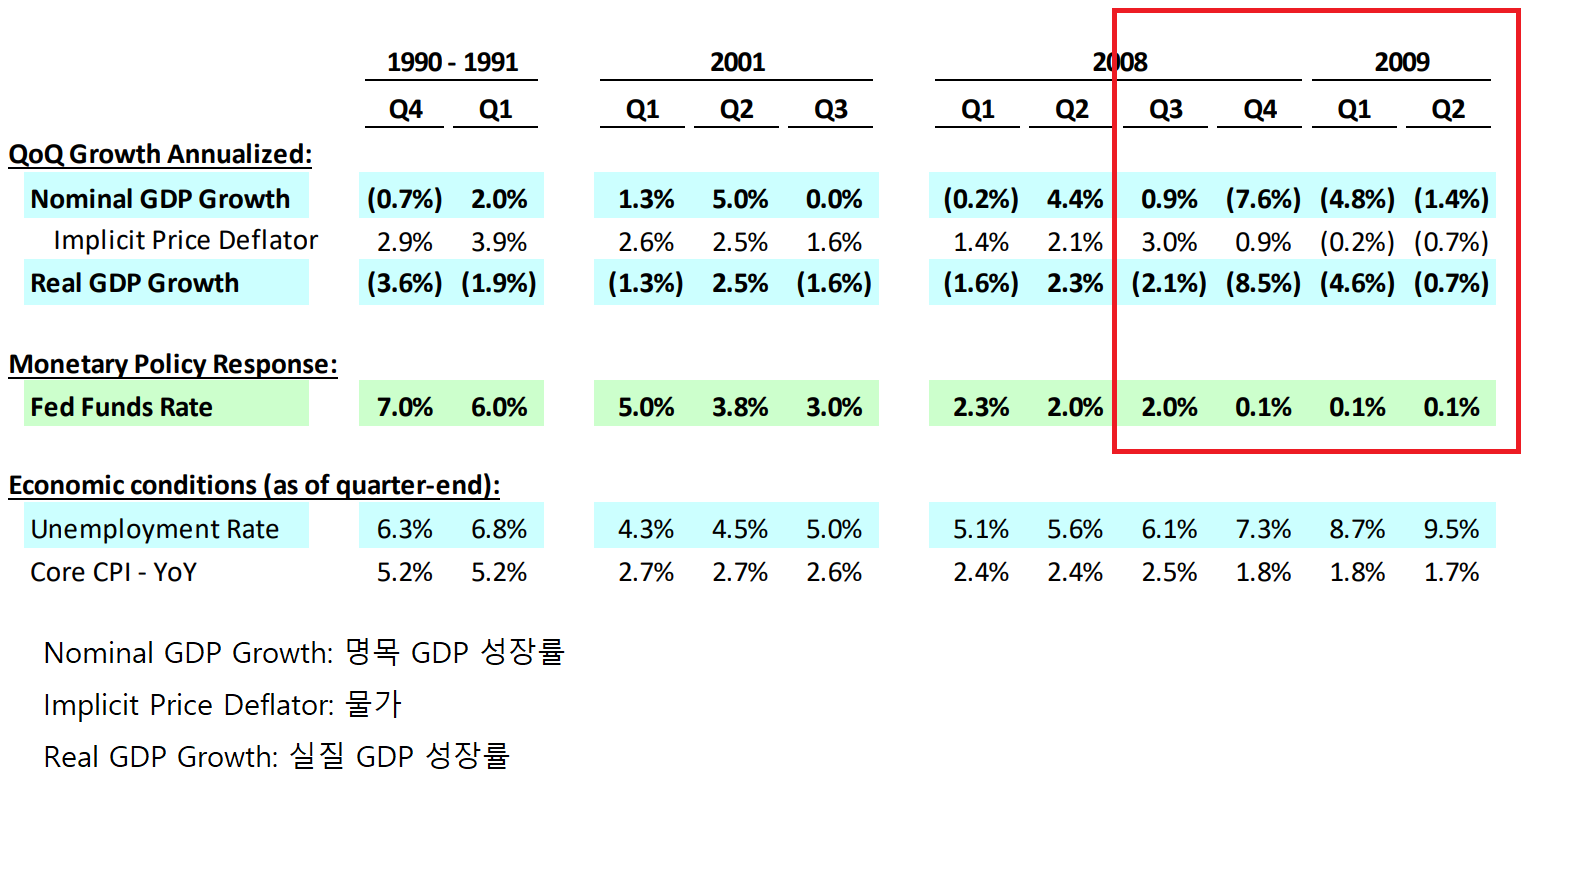 연도 별 명목/실질 GDP와 기준금리 변화